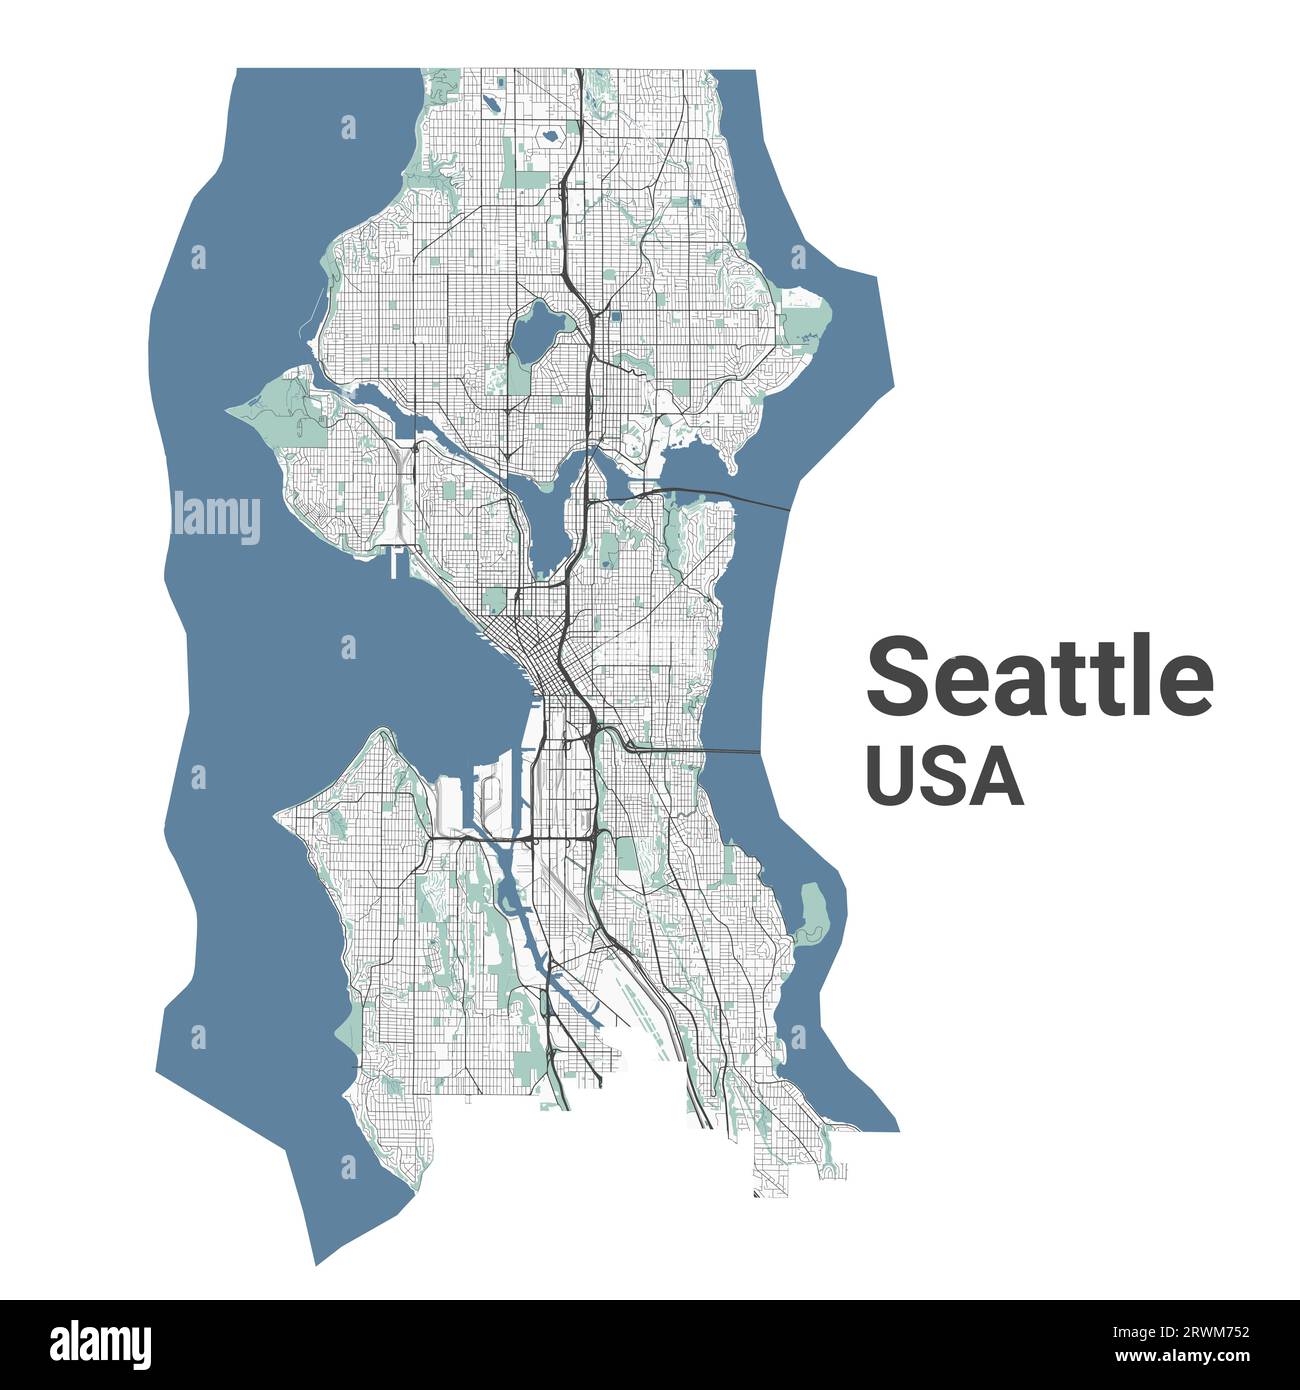 Seattle Karte, amerikanische Stadt. Stadtplan mit Flüssen und Straßen, Parks und Eisenbahnen. Vektorillustration. Stock Vektor